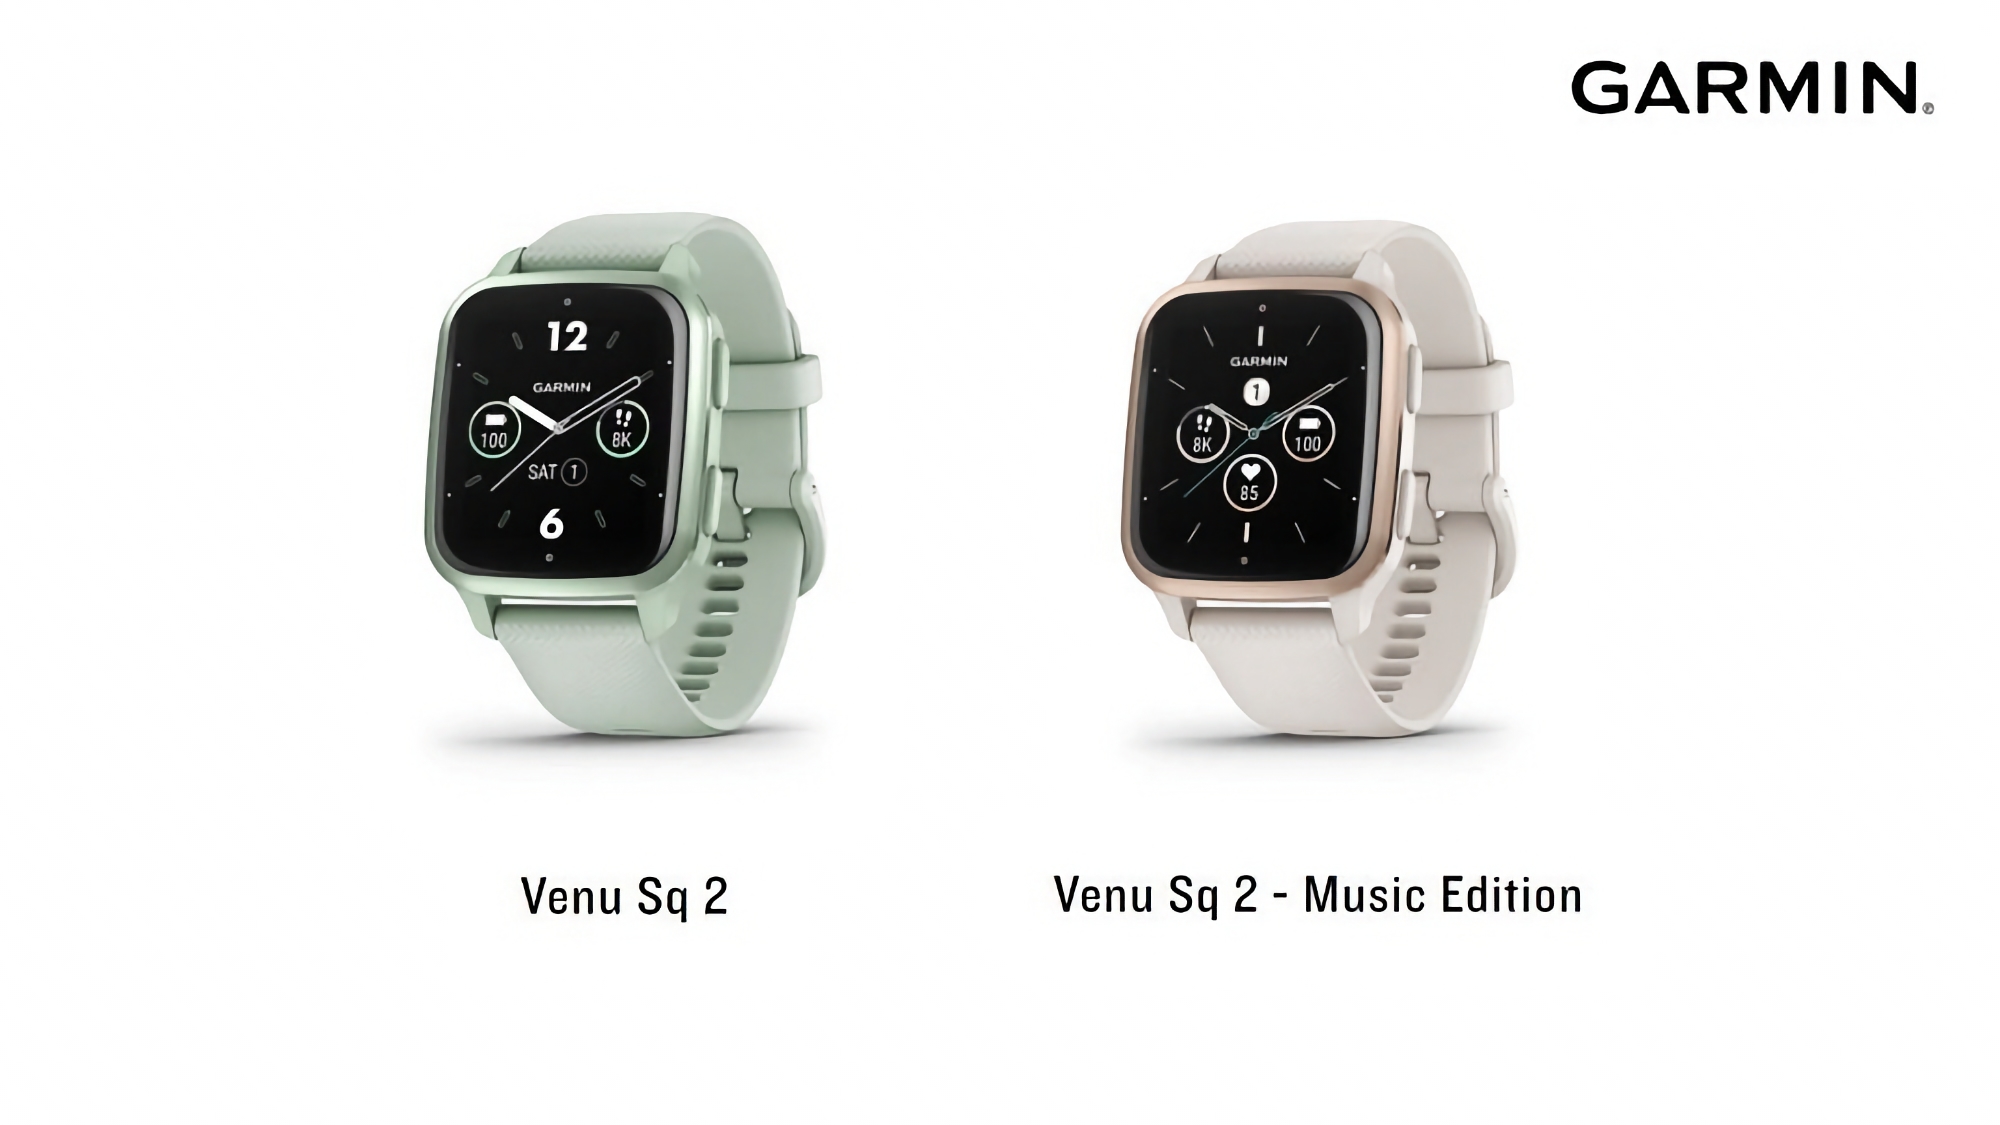 Garmin testuje nowe oprogramowanie sprzętowe dla zegarków sportowych Venu Sq 2 i Venu Sq 2 Music Edition